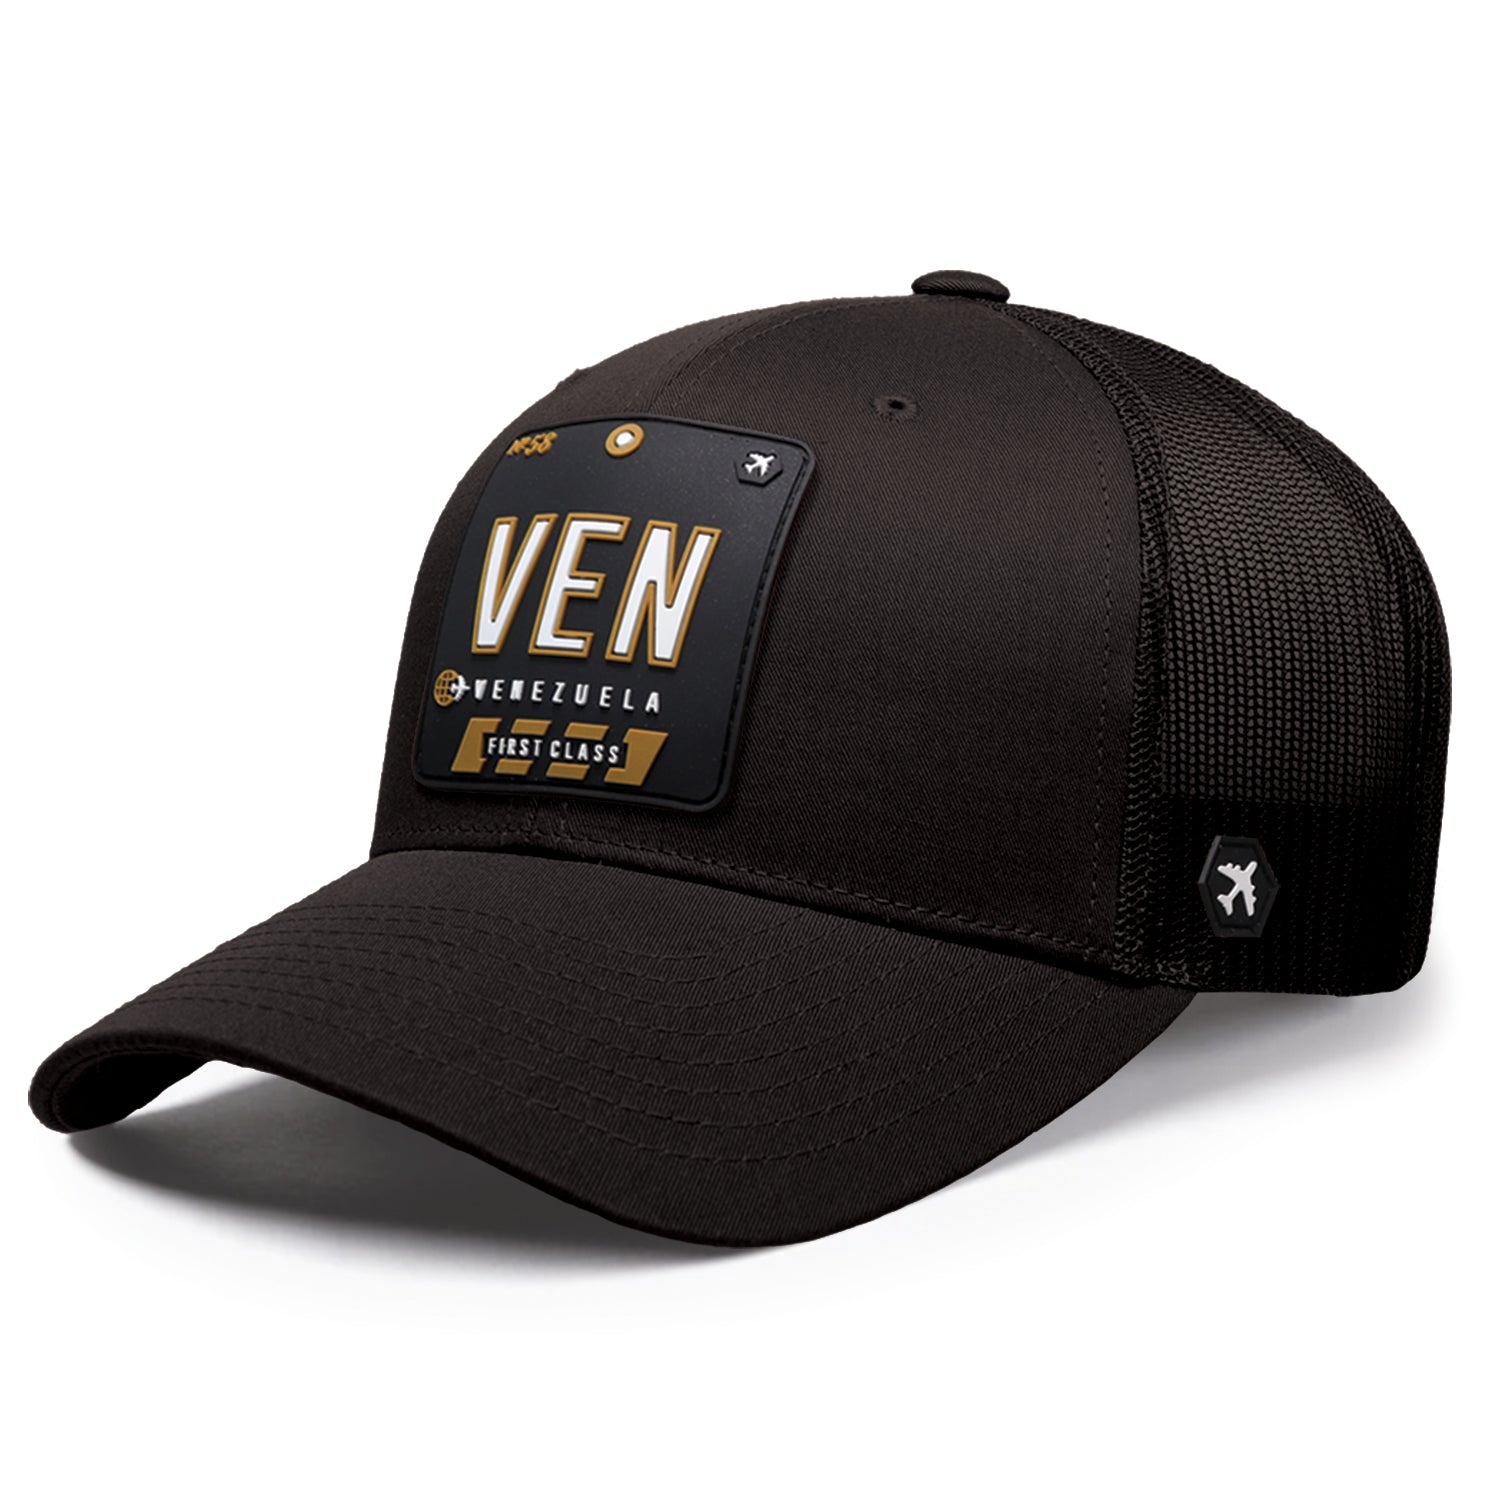 VEN - Venezuela Trucker Hat Black